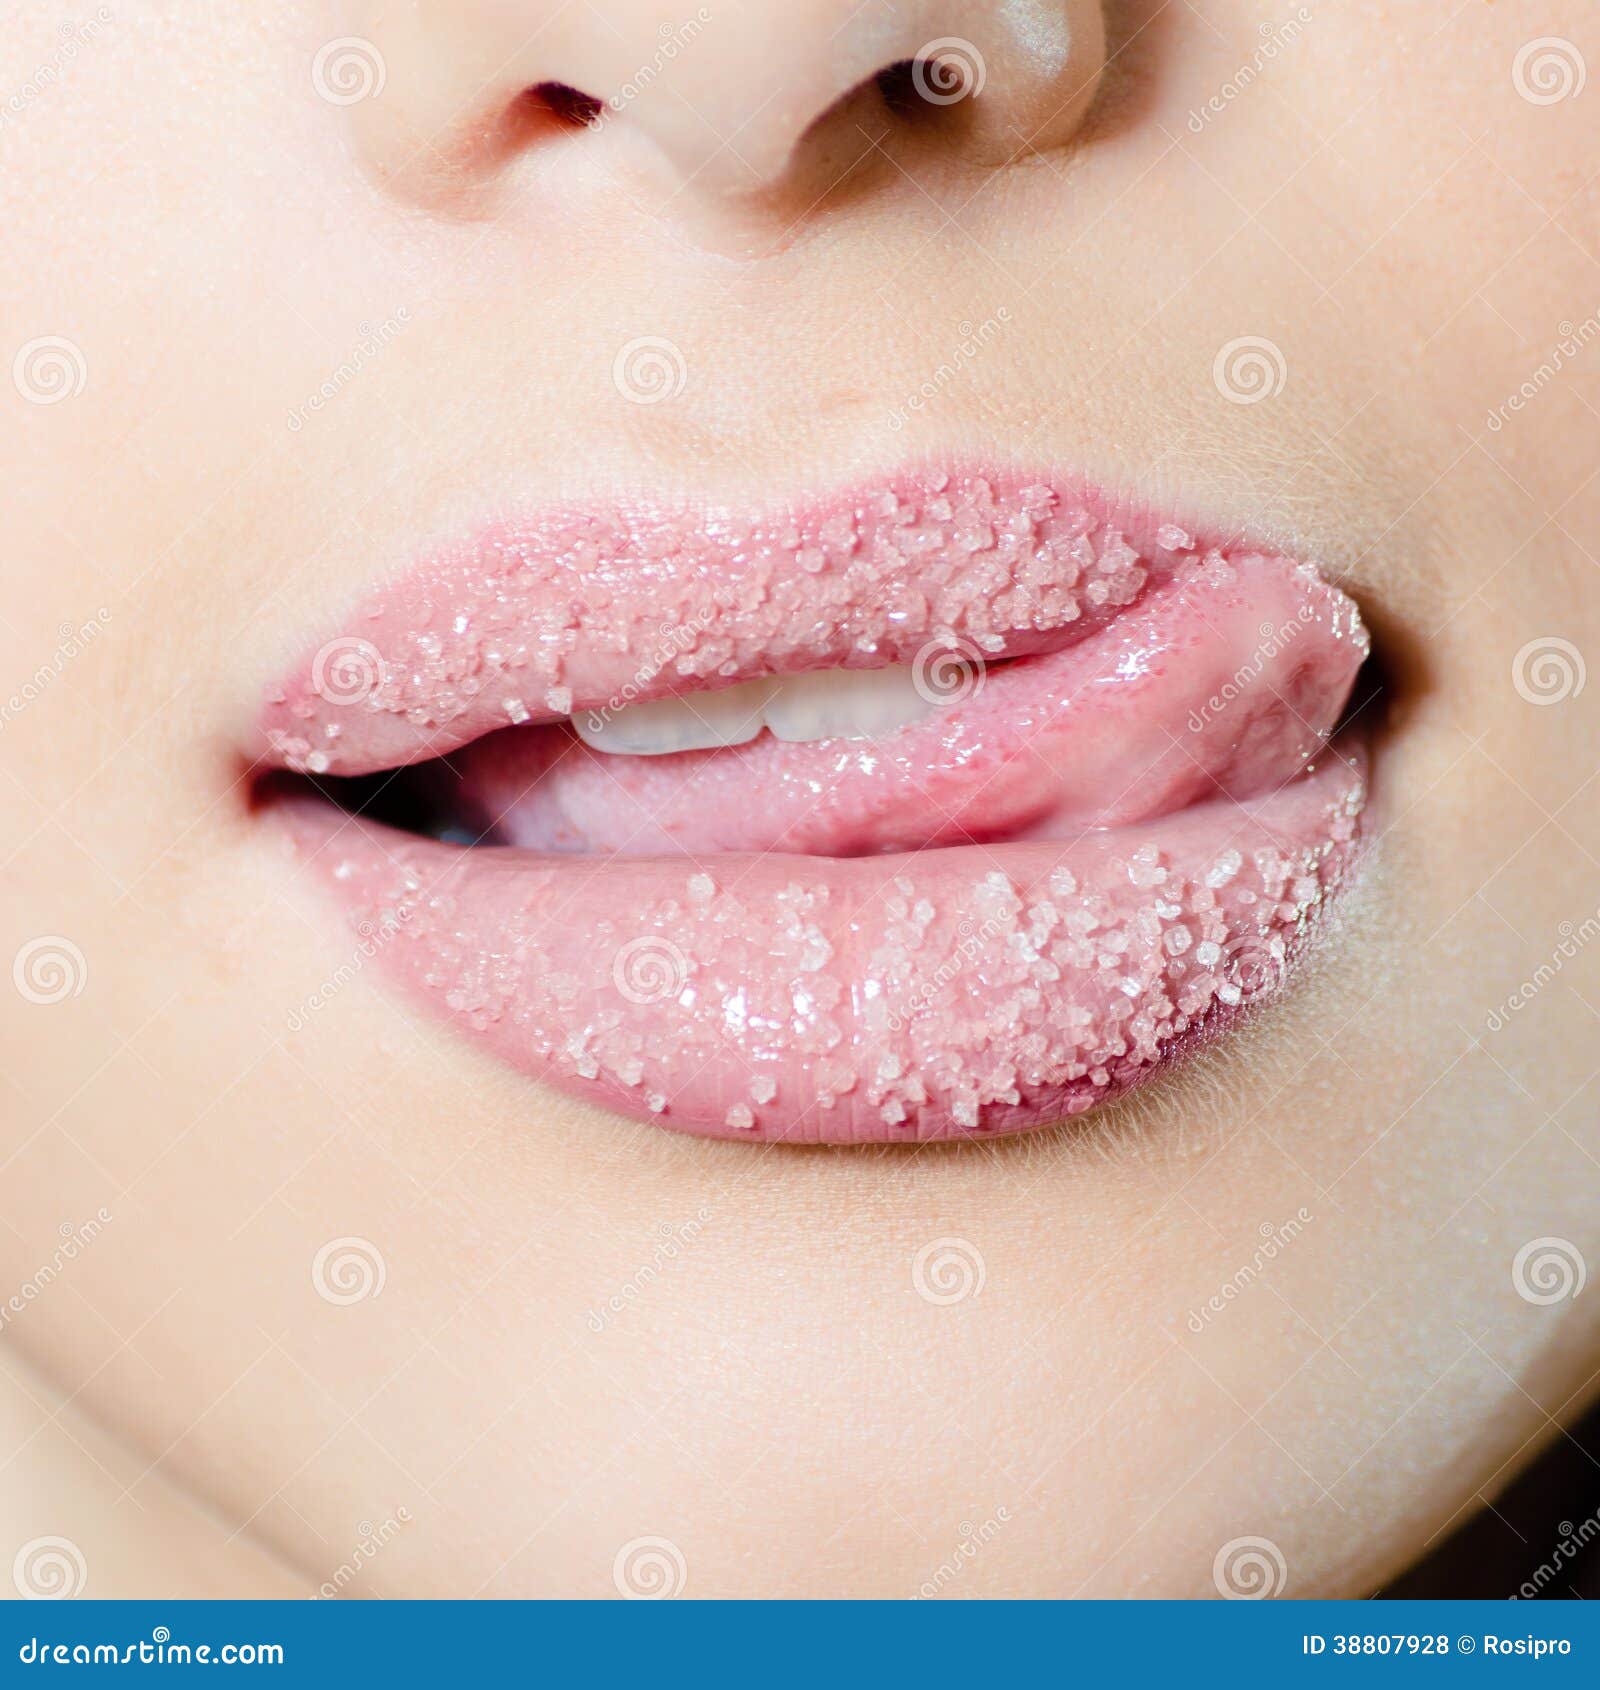 Вишня вкусом на губах твоих. Красивые губы фото. Губы в сахаре. Вкус губ.